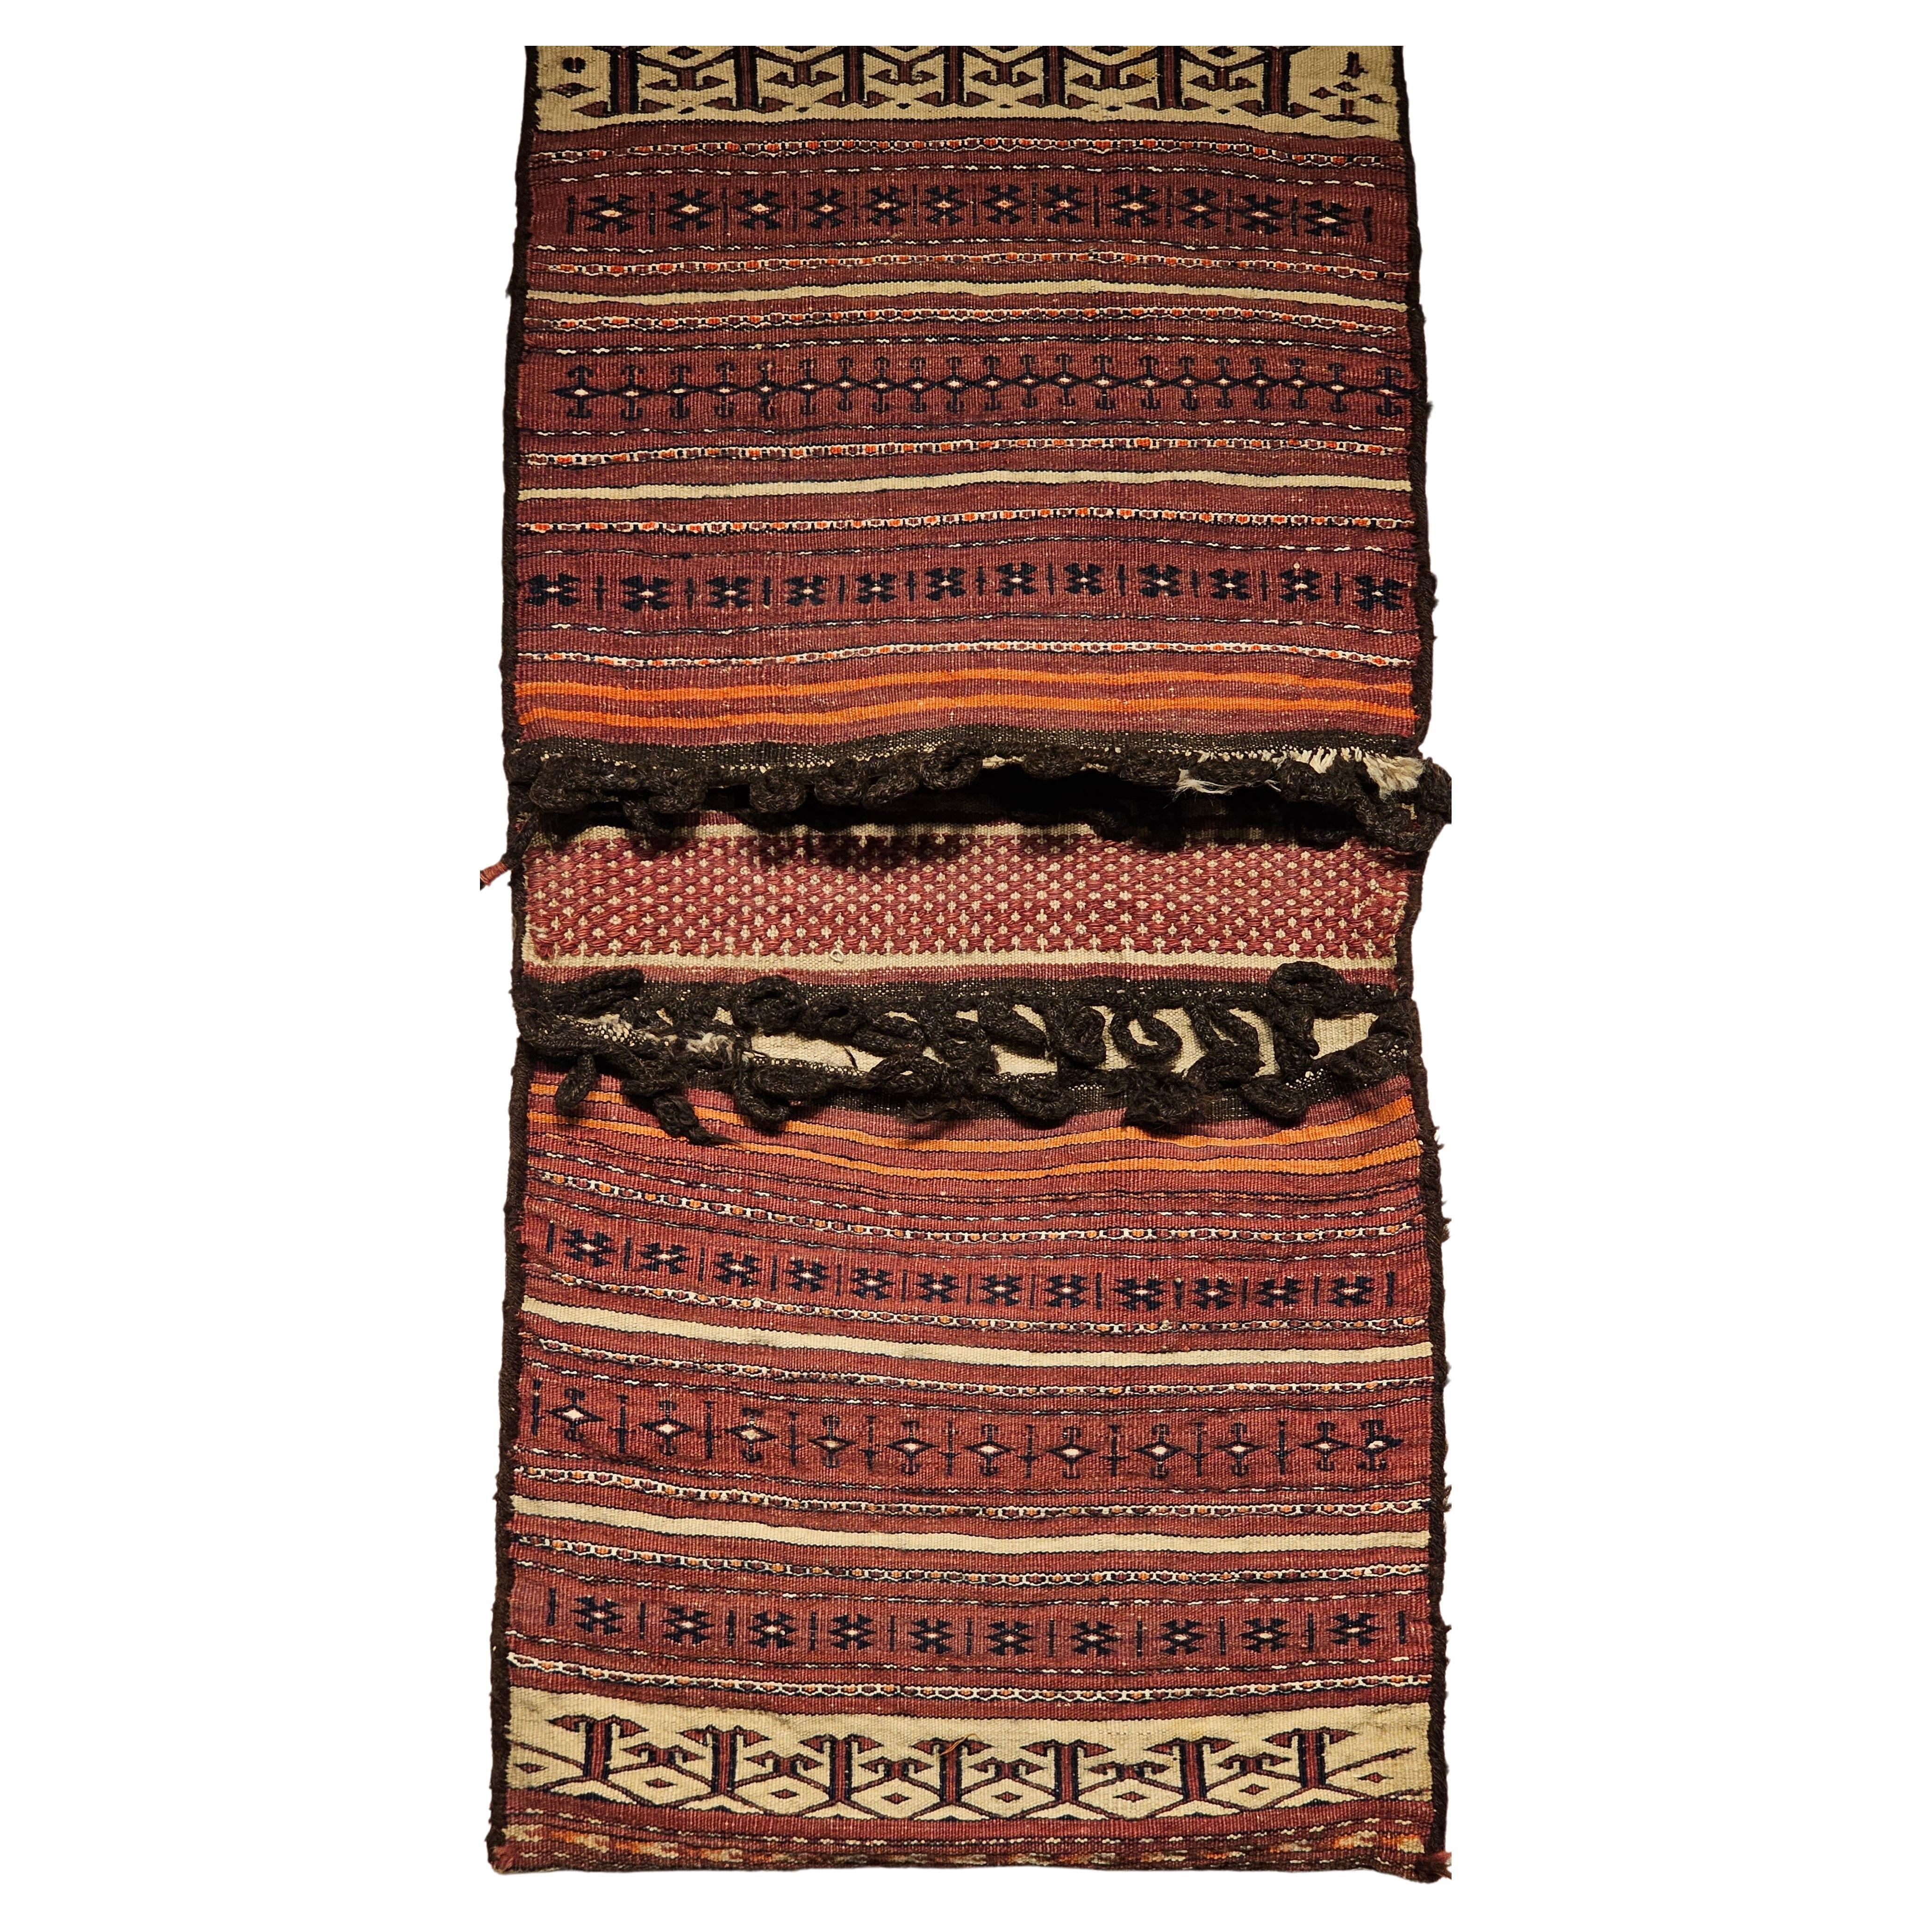 Turkmenische Satteltasche aus dem 19. Jahrhundert mit Tekke-Streifenmuster in Dunkelrot, Elfenbein und Braun